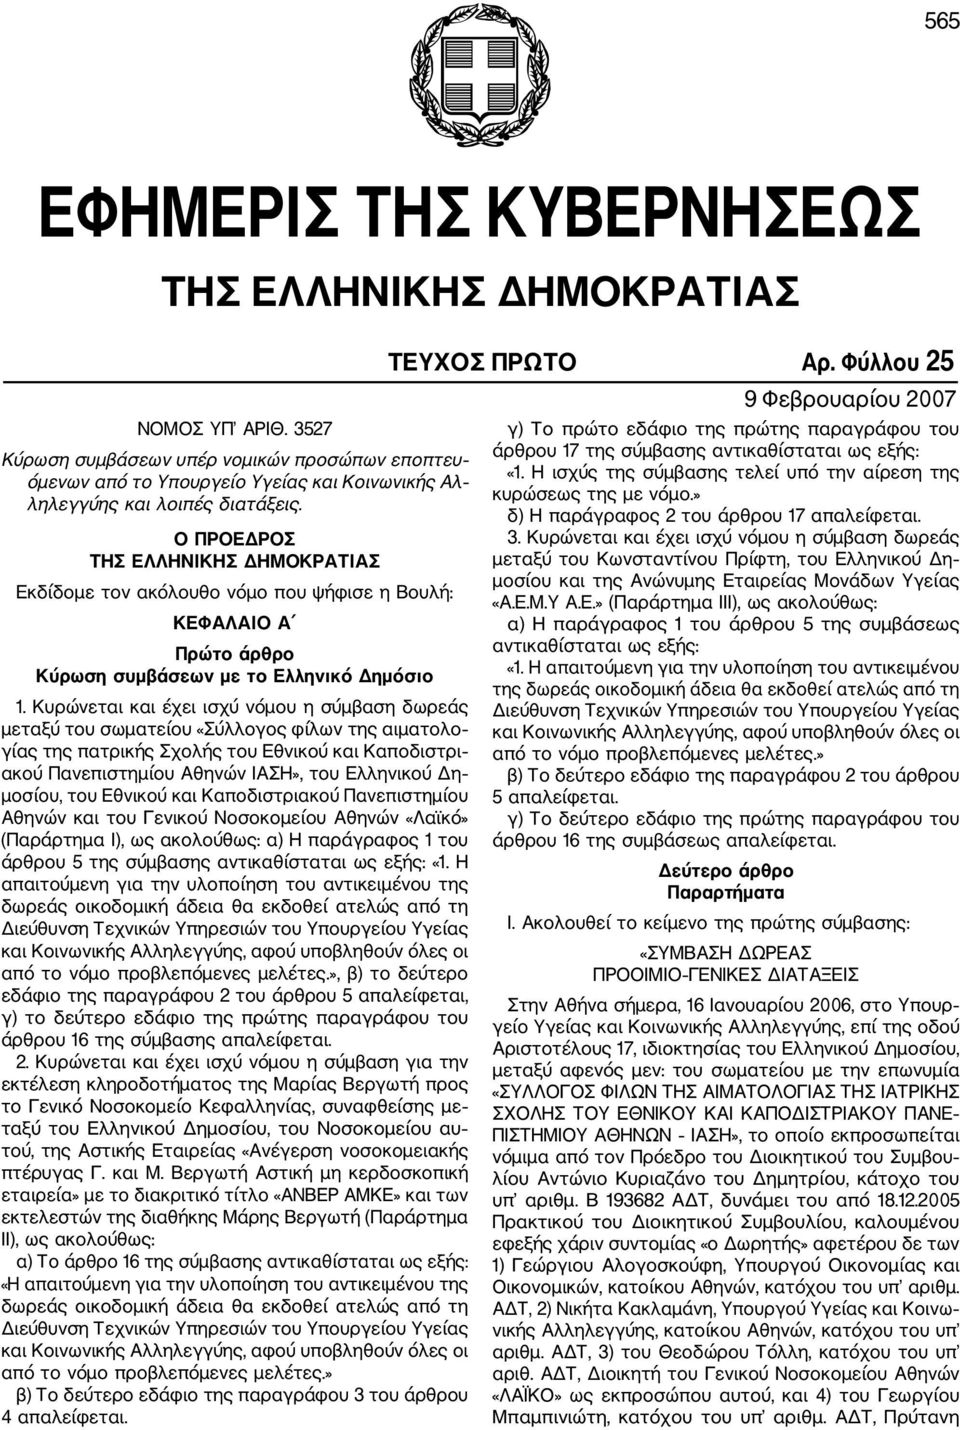 Ο ΠΡΟΕΔΡΟΣ ΤΗΣ ΕΛΛΗΝΙΚΗΣ ΔΗΜΟΚΡΑΤΙΑΣ Εκδίδομε τον ακόλουθο νόμο που ψήφισε η Βουλή: ΚΕΦΑΛΑΙΟ Α Πρώτο άρθρο Κύρωση συμβάσεων με το Ελληνικό Δημόσιο 1.